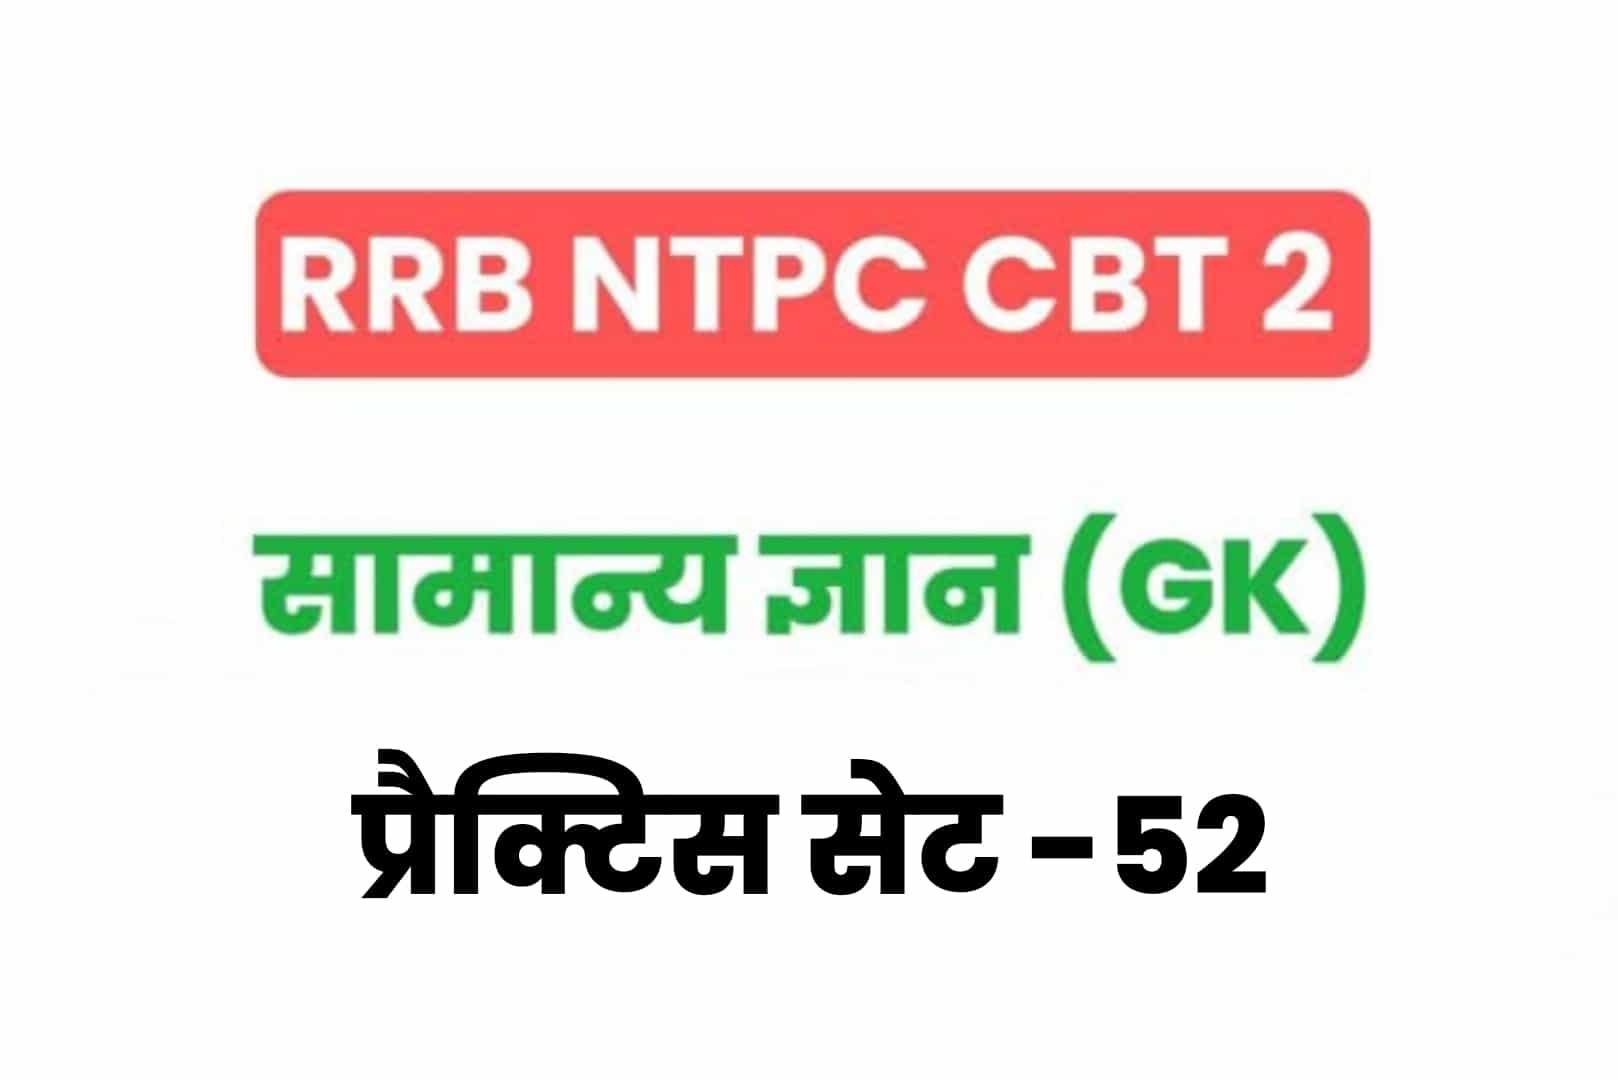 RRB NTPC CBT 2 GK प्रैक्टिस सेट 52: परीक्षा में जानें से पहले जरूर पढ़ें सामान्य ज्ञान के 25 मुख्य MCQ